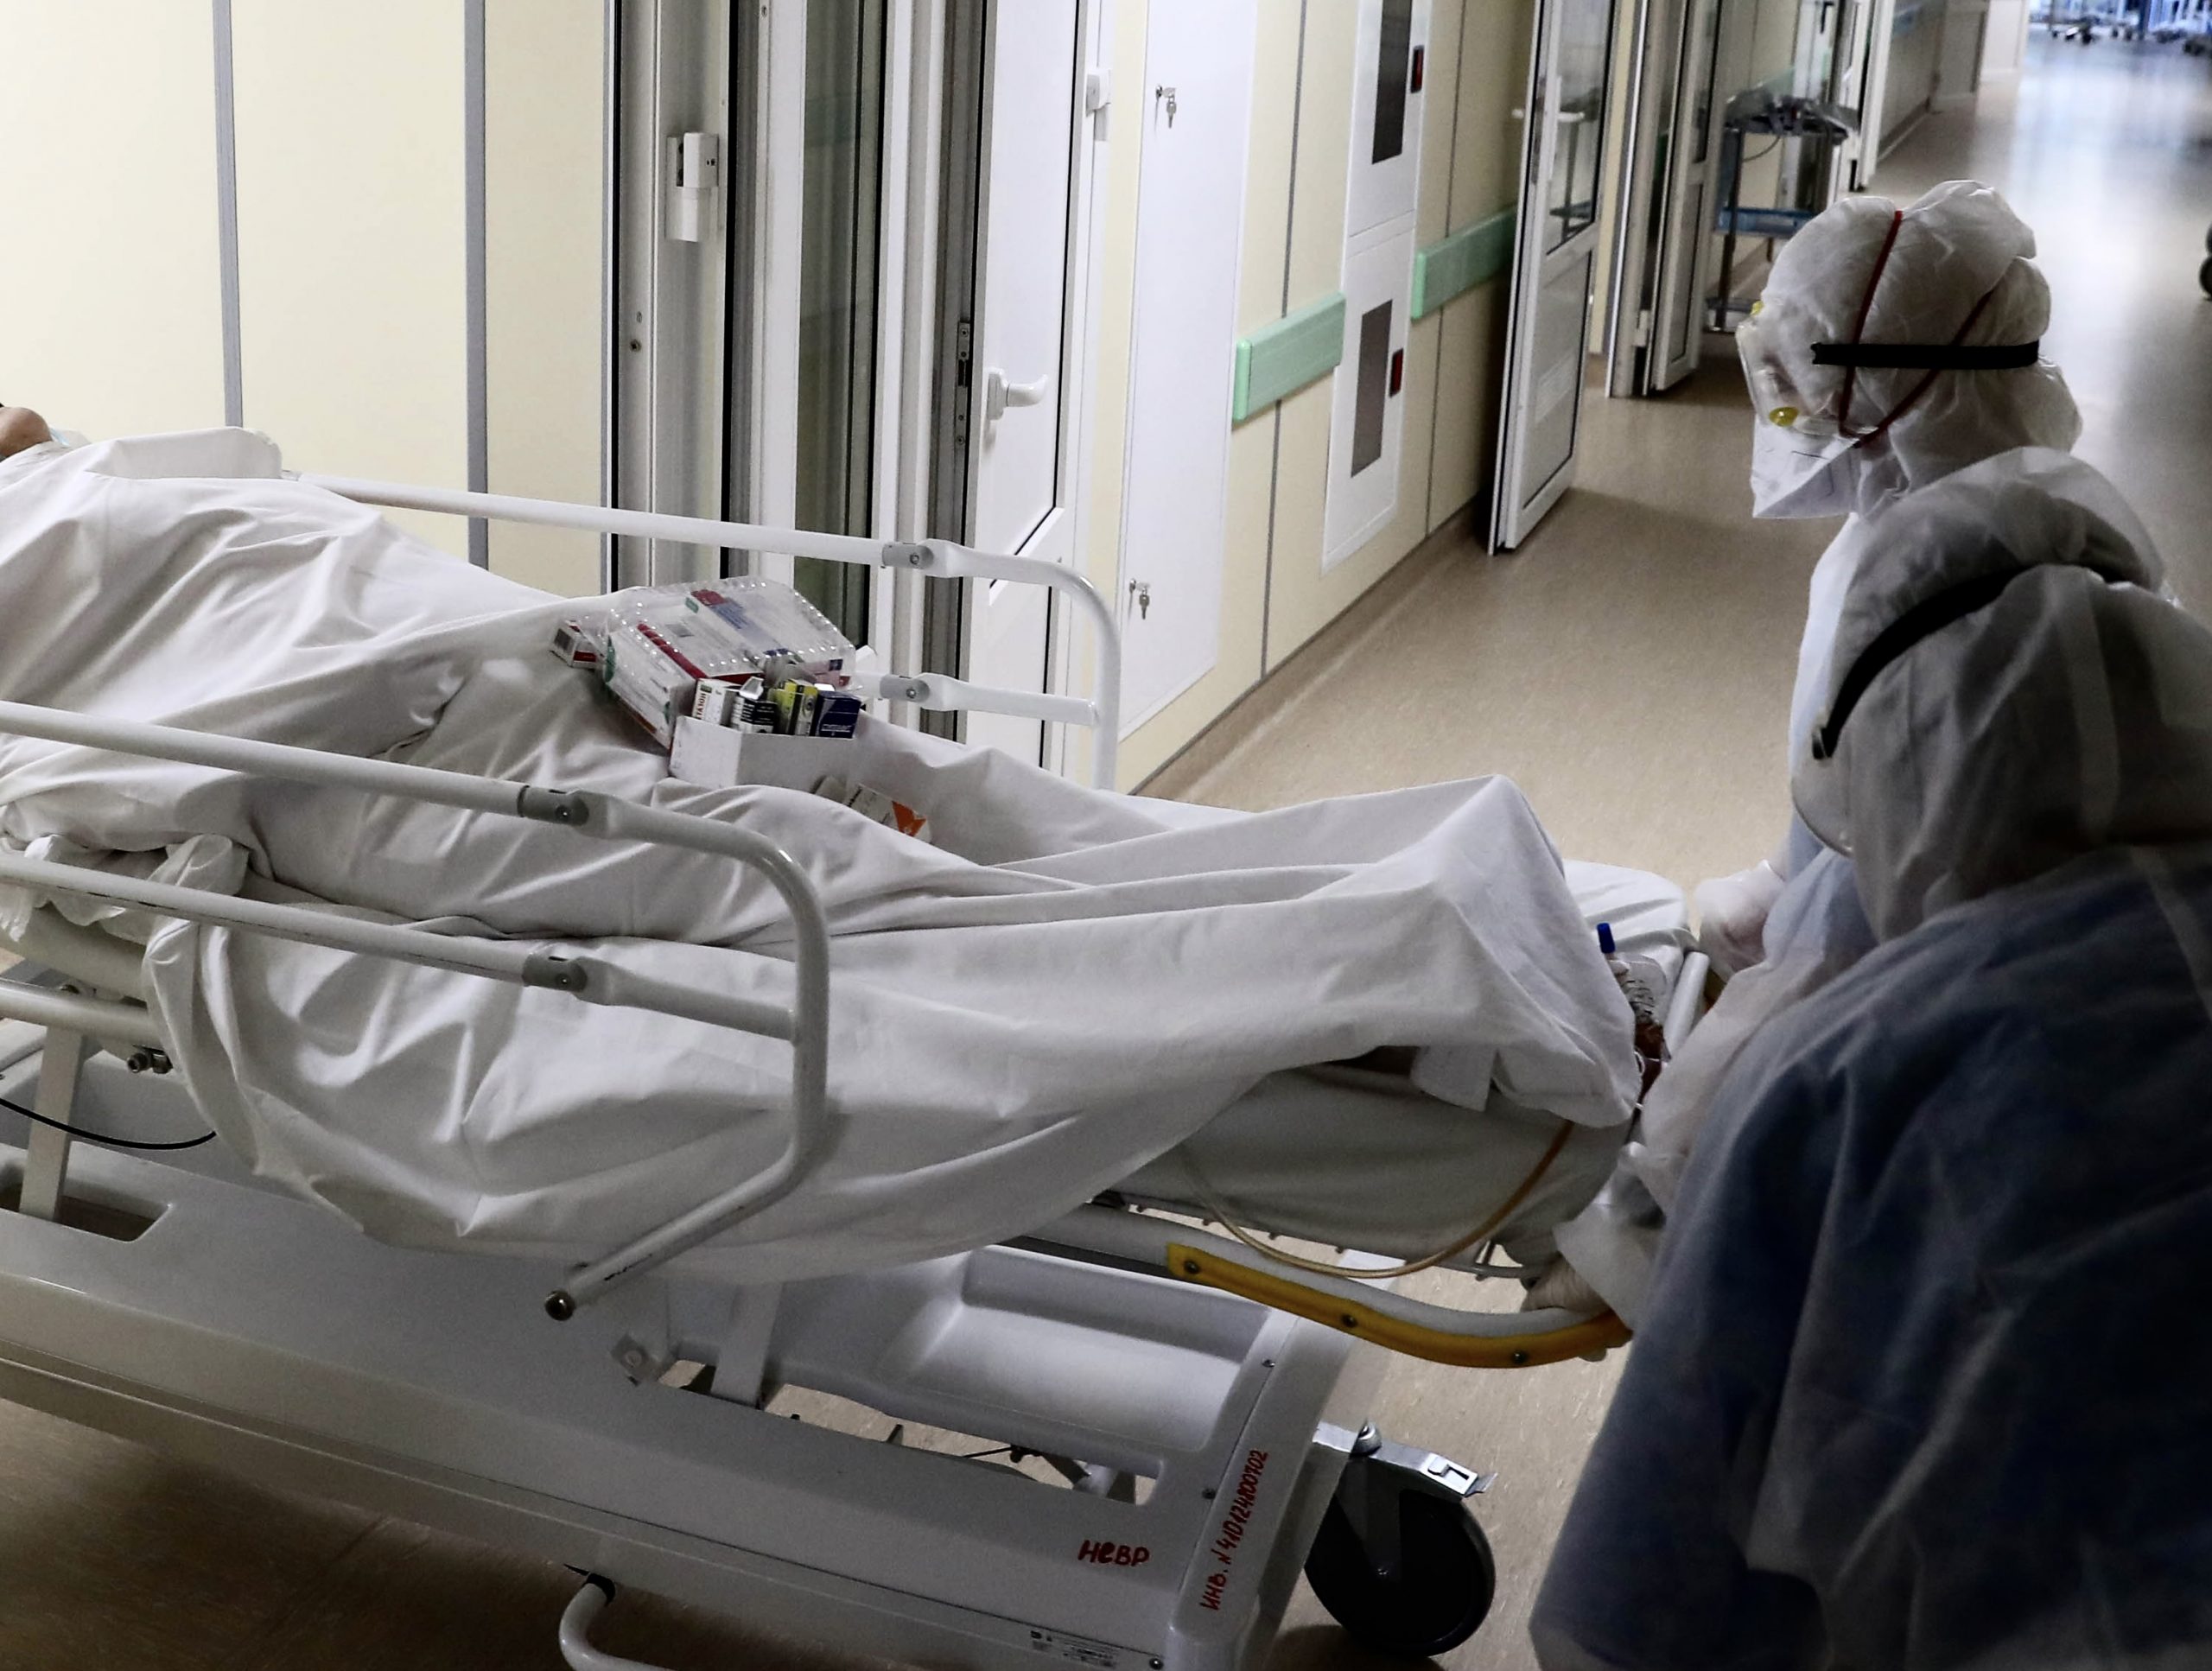 Системные ошибки Смольного стали причиной крупнейшей трагедии Петербурга в медицинской сфере 